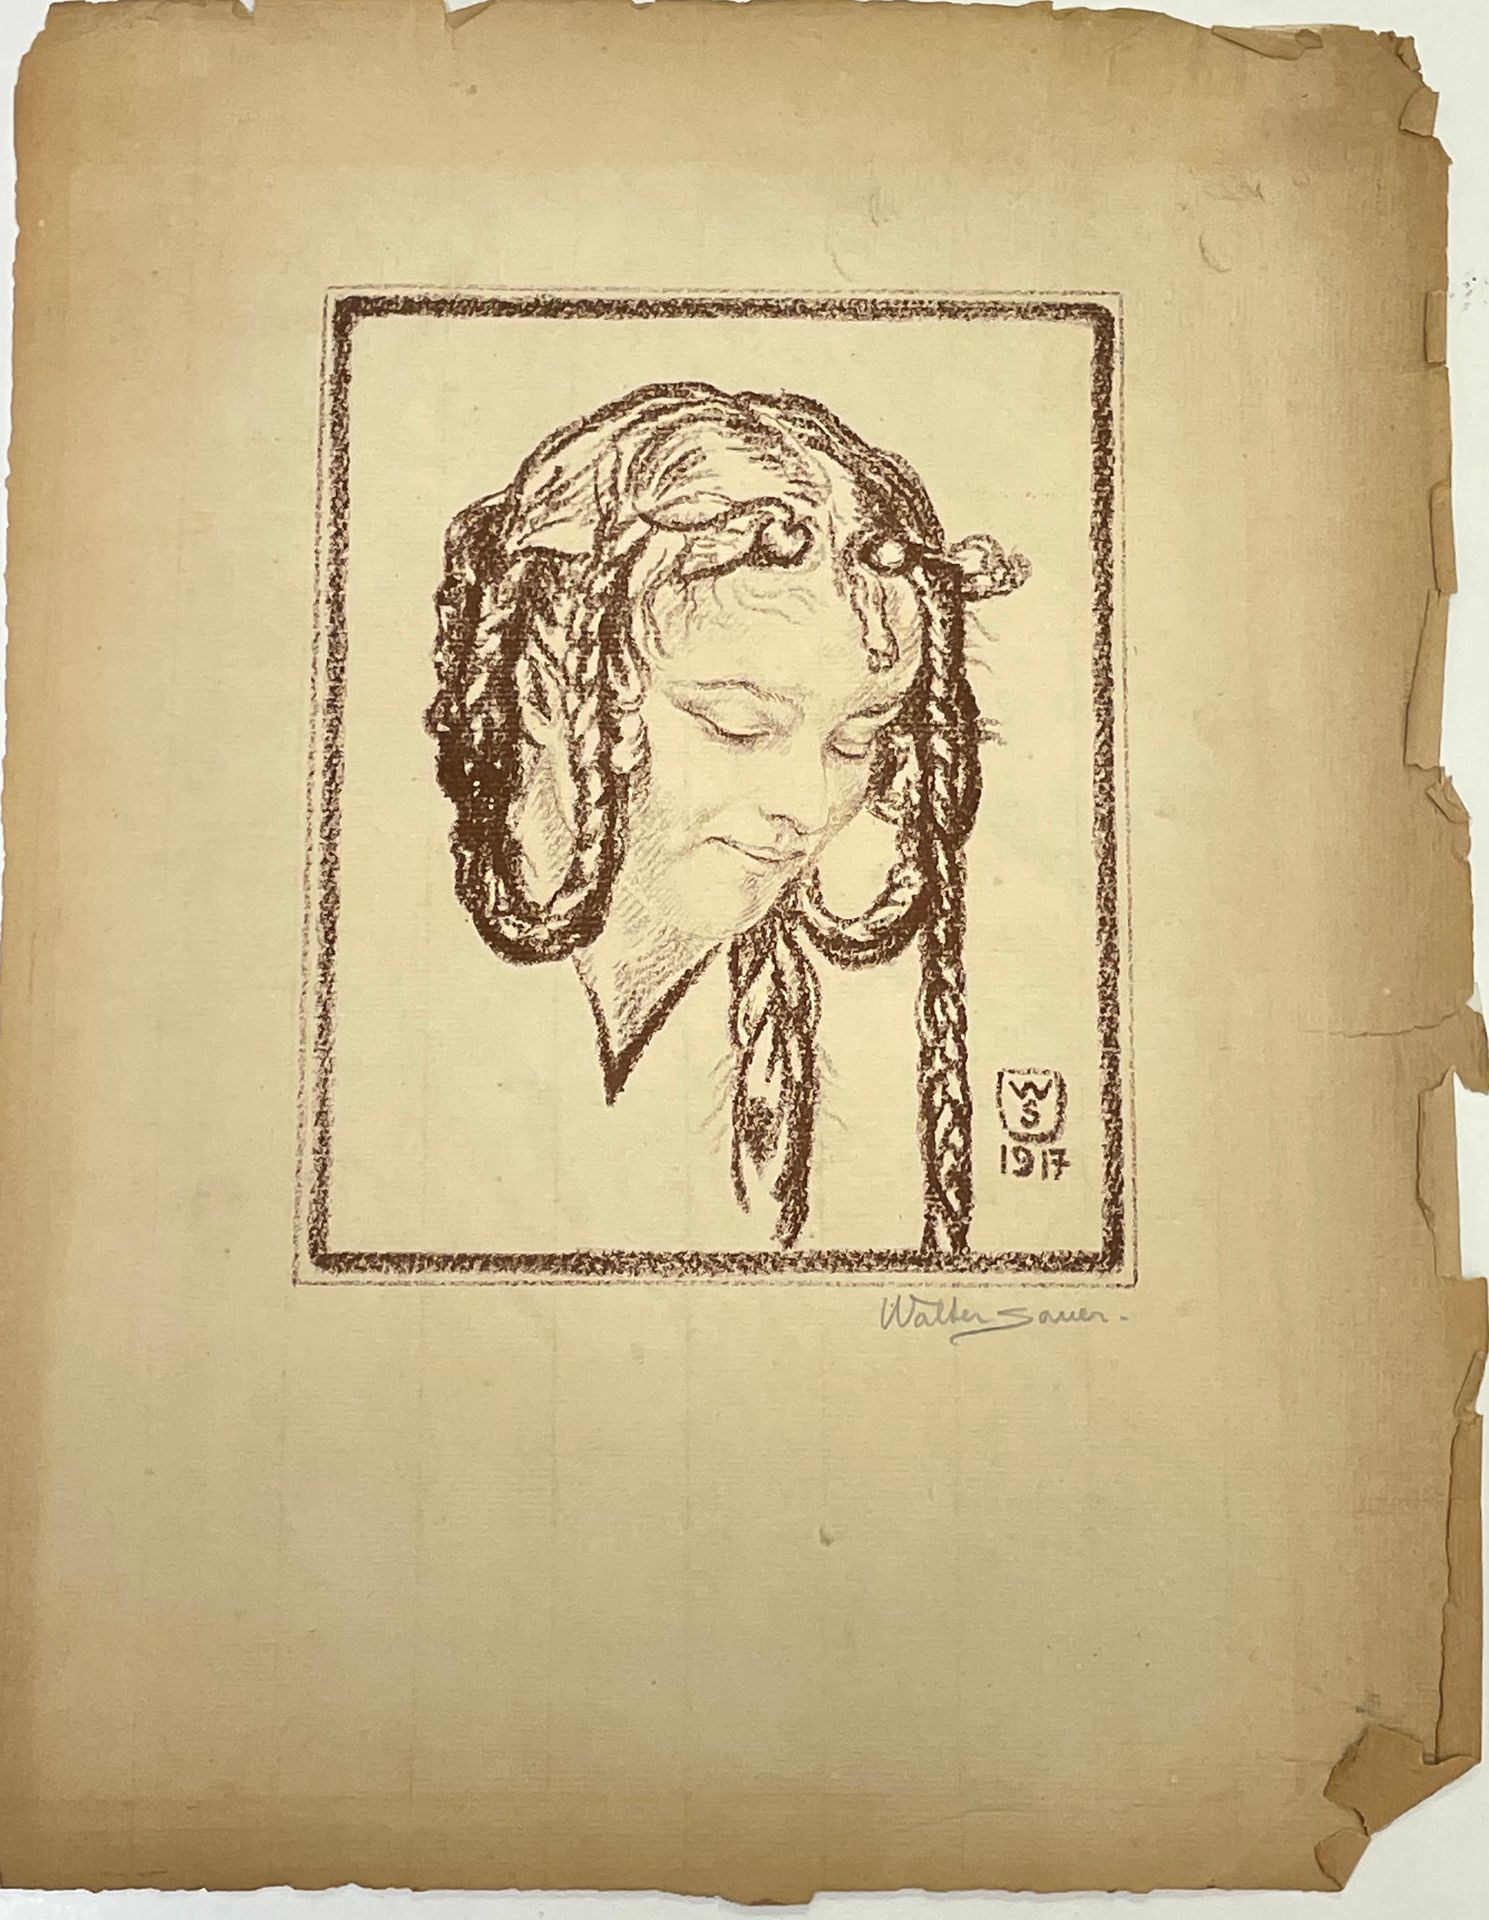 SAUER (Walter). "Jeune fille" (1917). Lithographie monochrome tirée sur papier v&hellip;